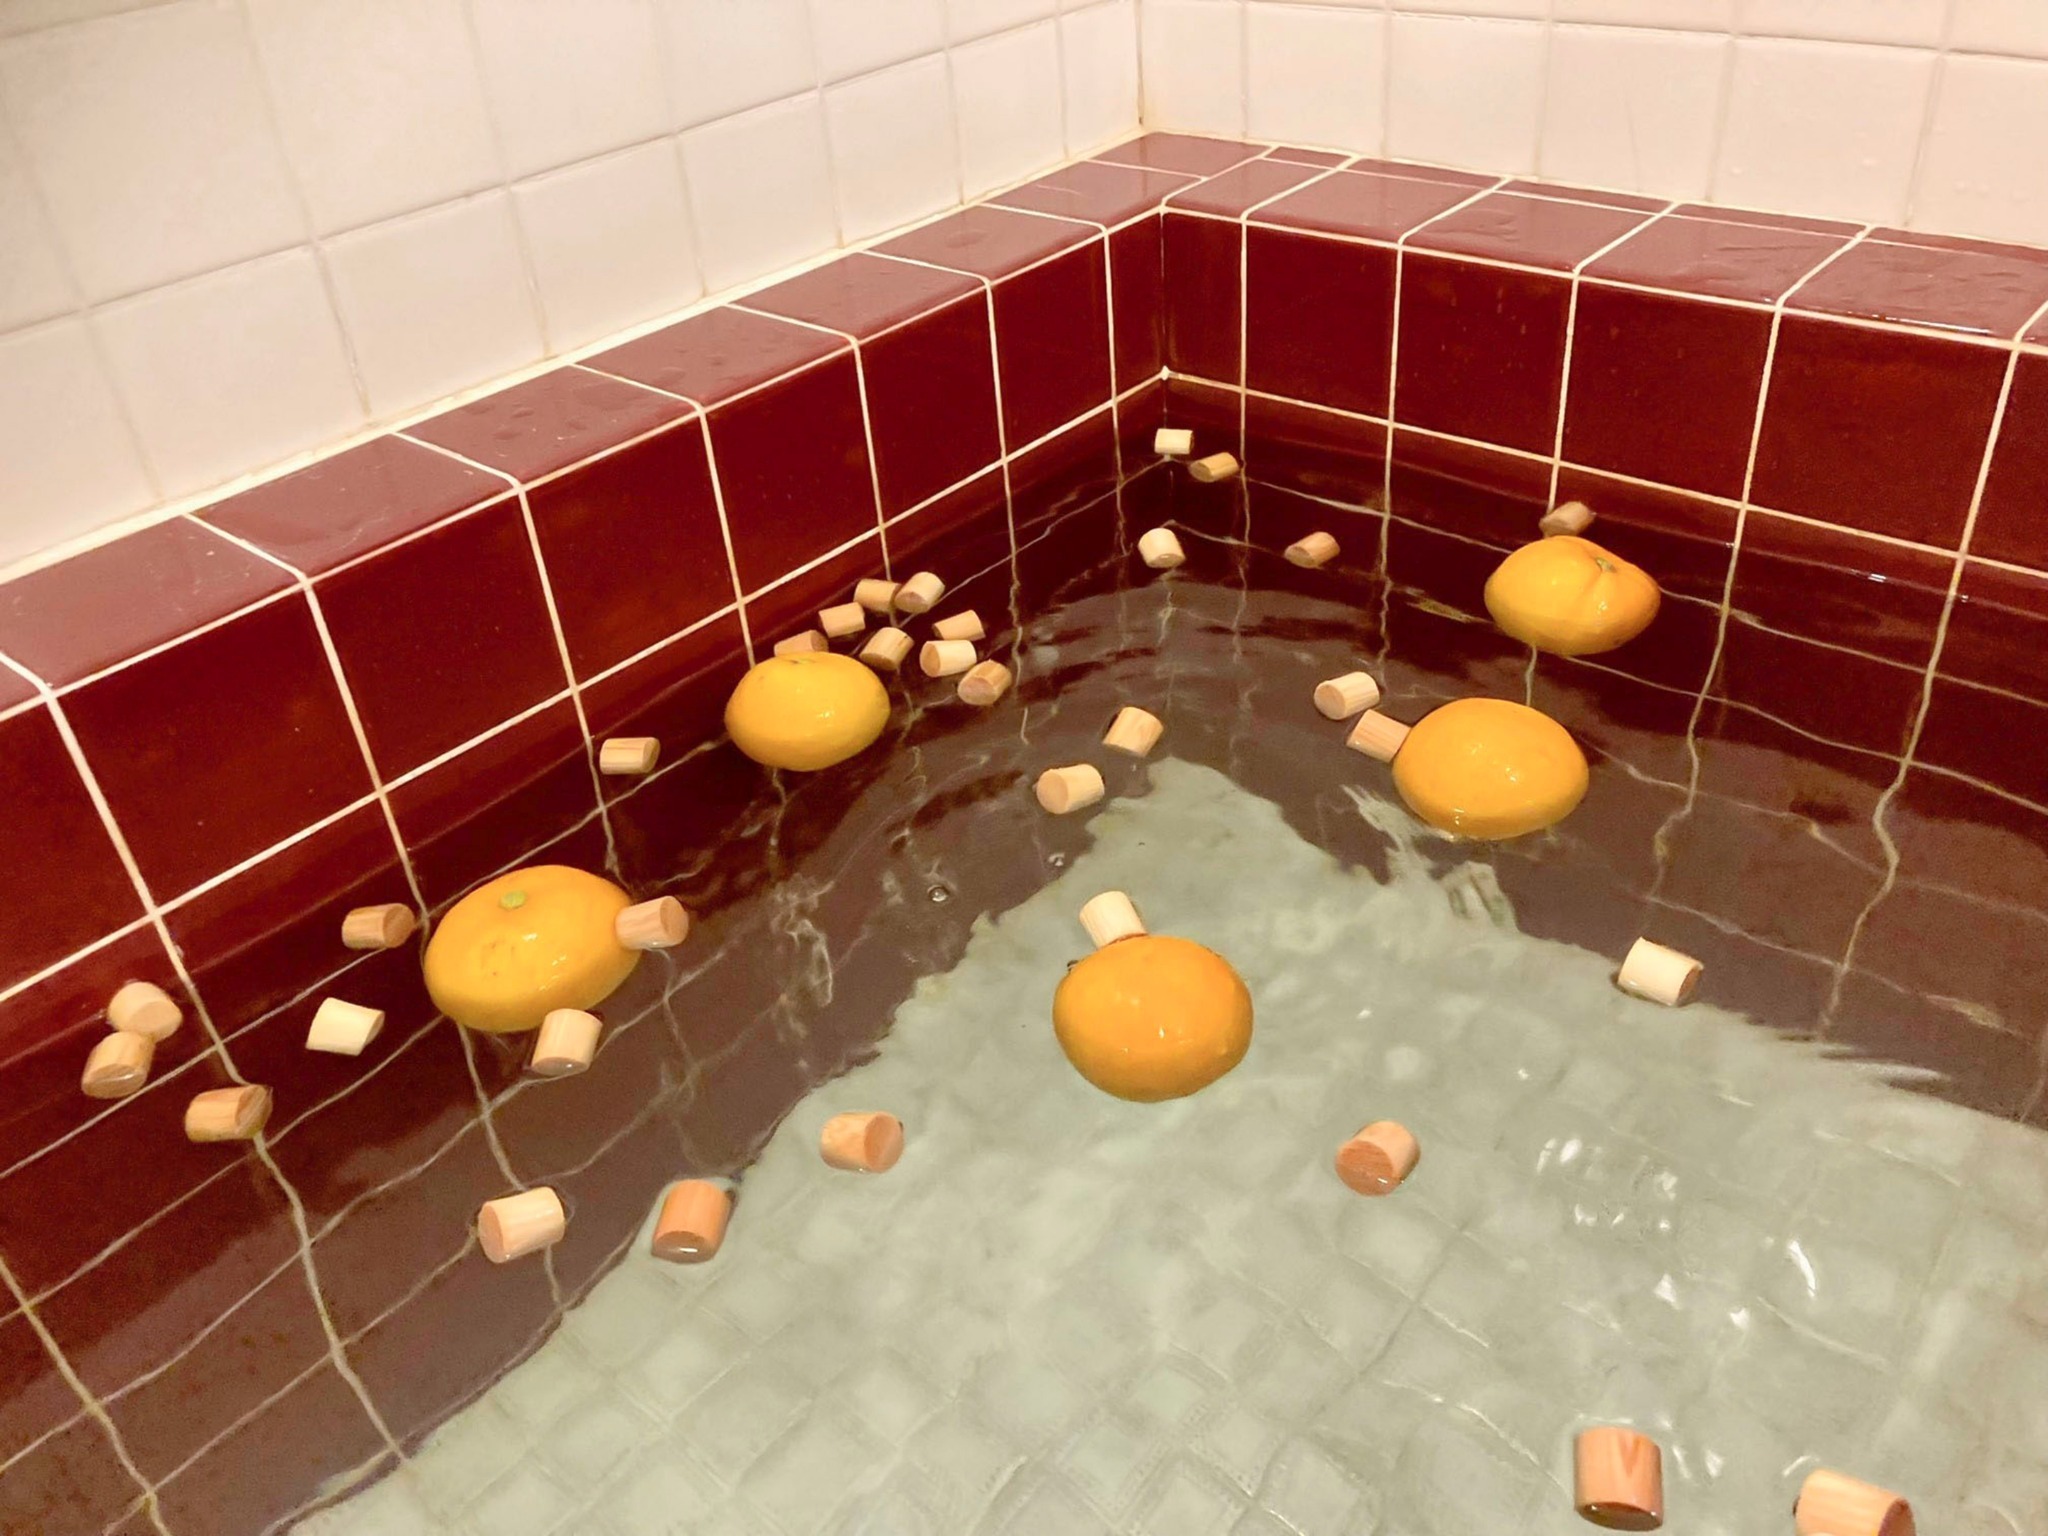 ・【風呂】柑橘&檜玉入り風呂であったかリラックスしてください